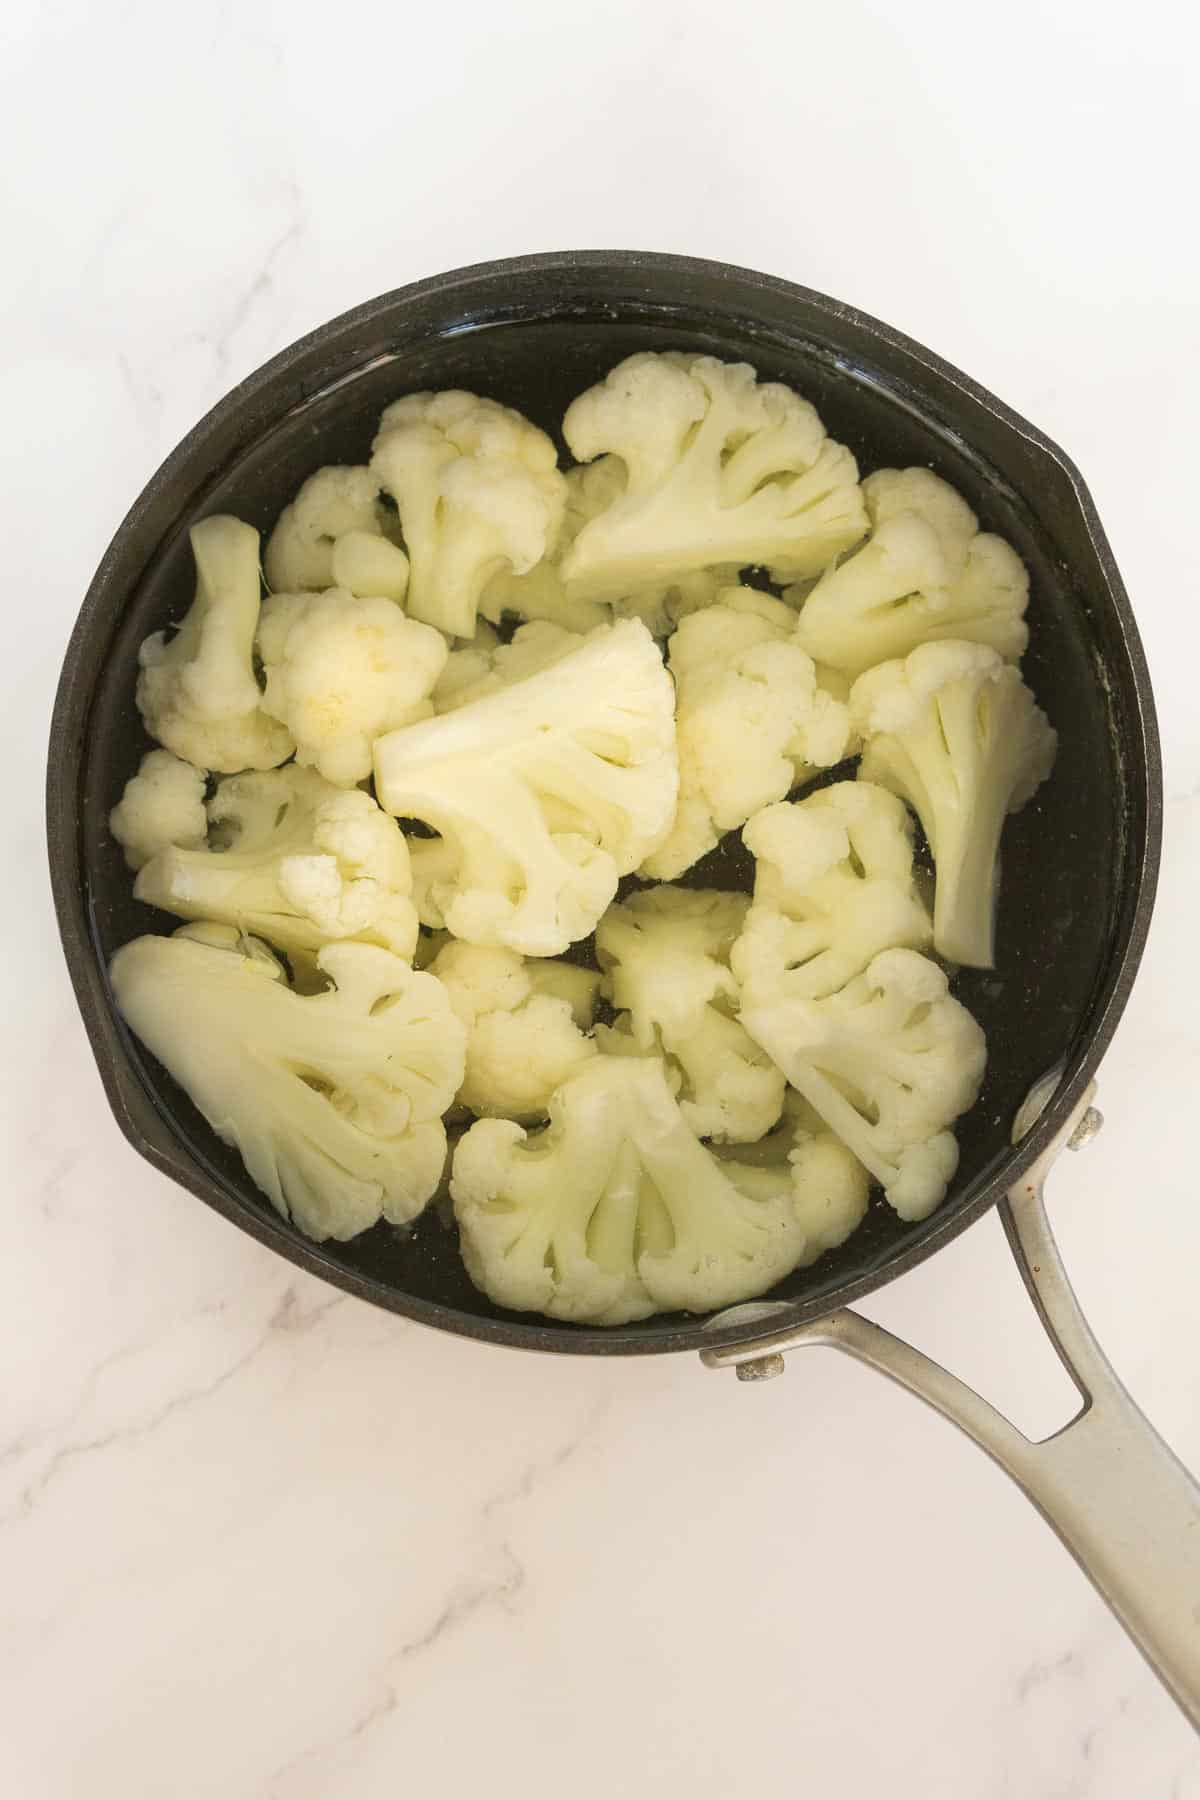 Par-boiling cauliflower florets in pot.